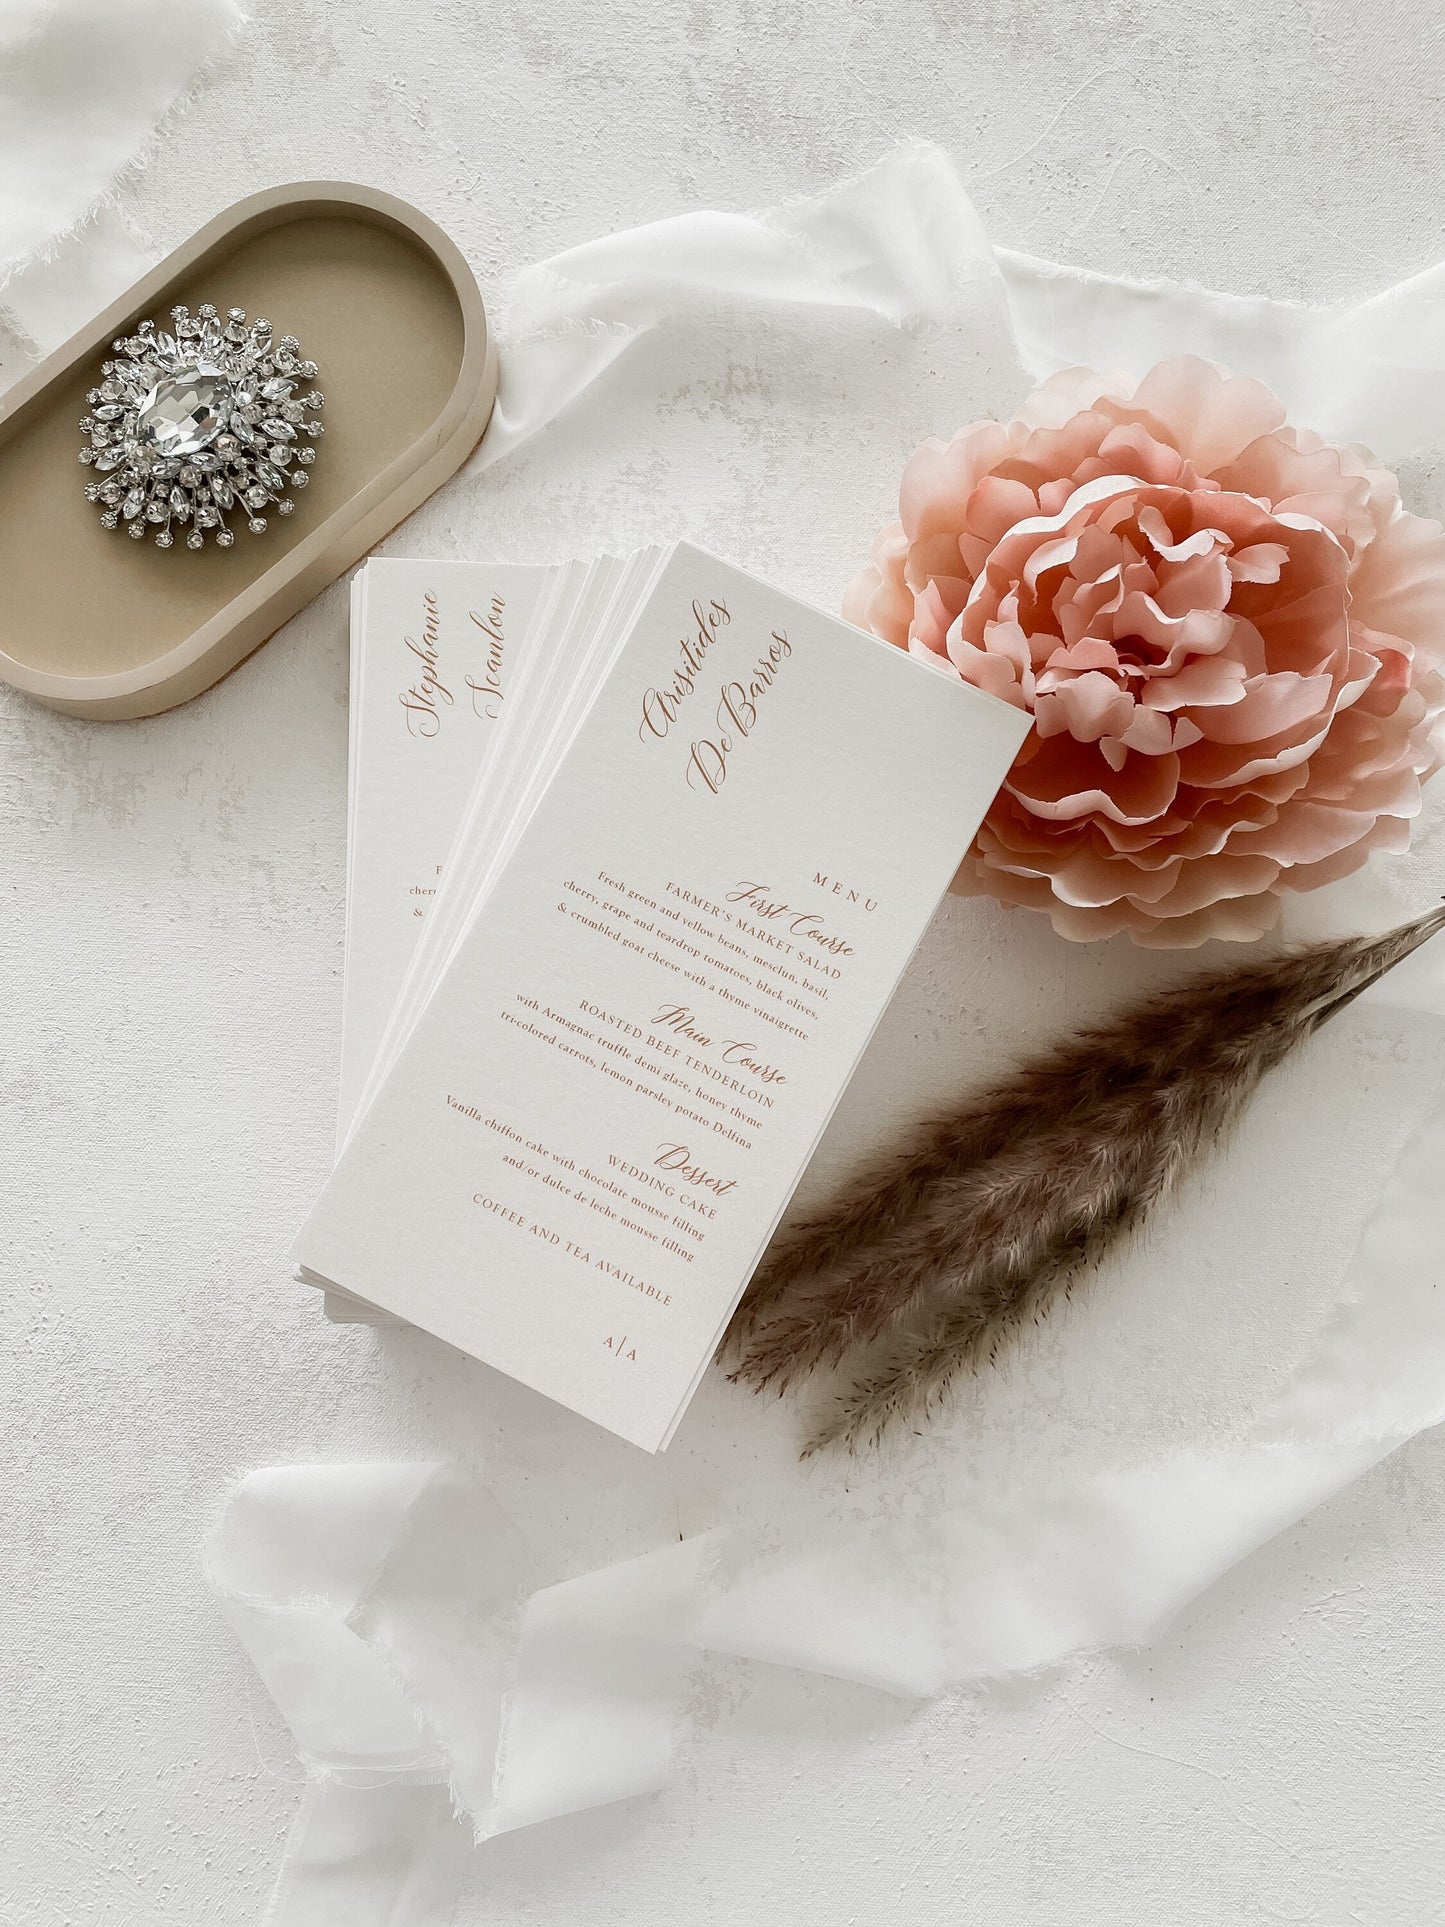 Wedding Menus | Dinner Menus | Custom Name Cards | Menu Namecards - Set of 10